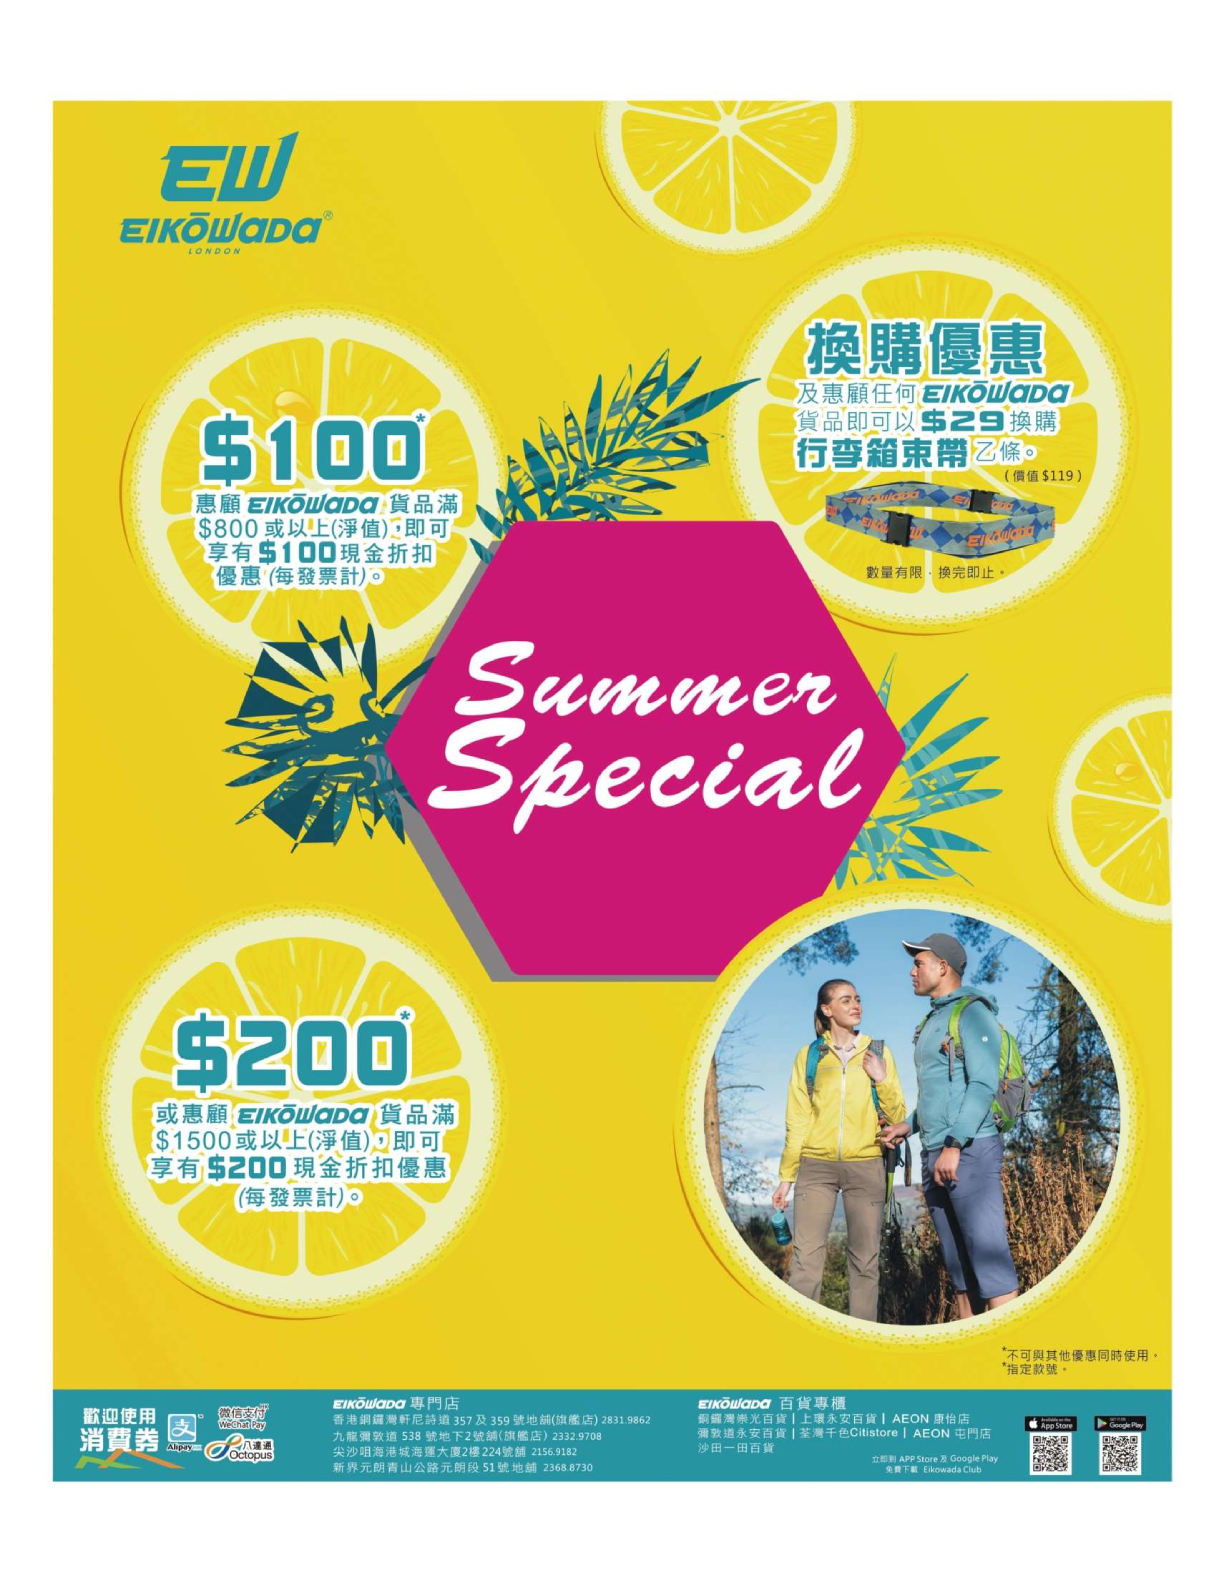 Eikowada: Summer Special